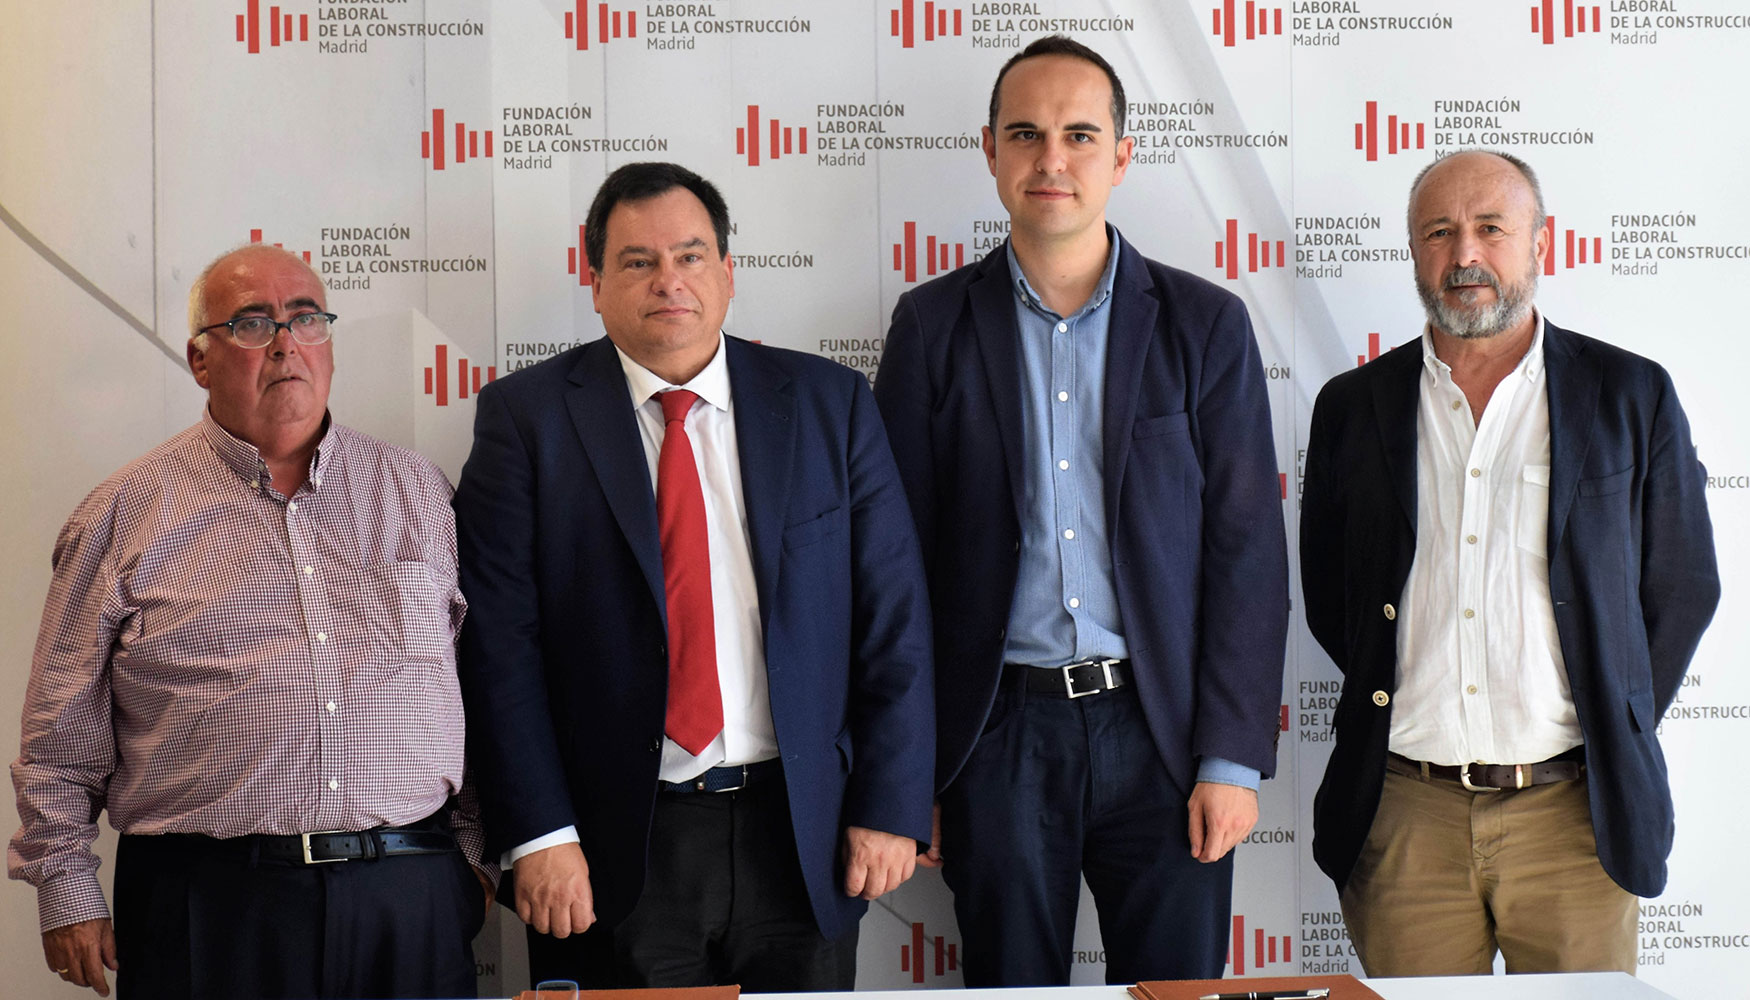 Los patronos de la Fundacin Laboral de la Construccin de Madrid, junto al concejal Jos Manuel Calvo del Olmo